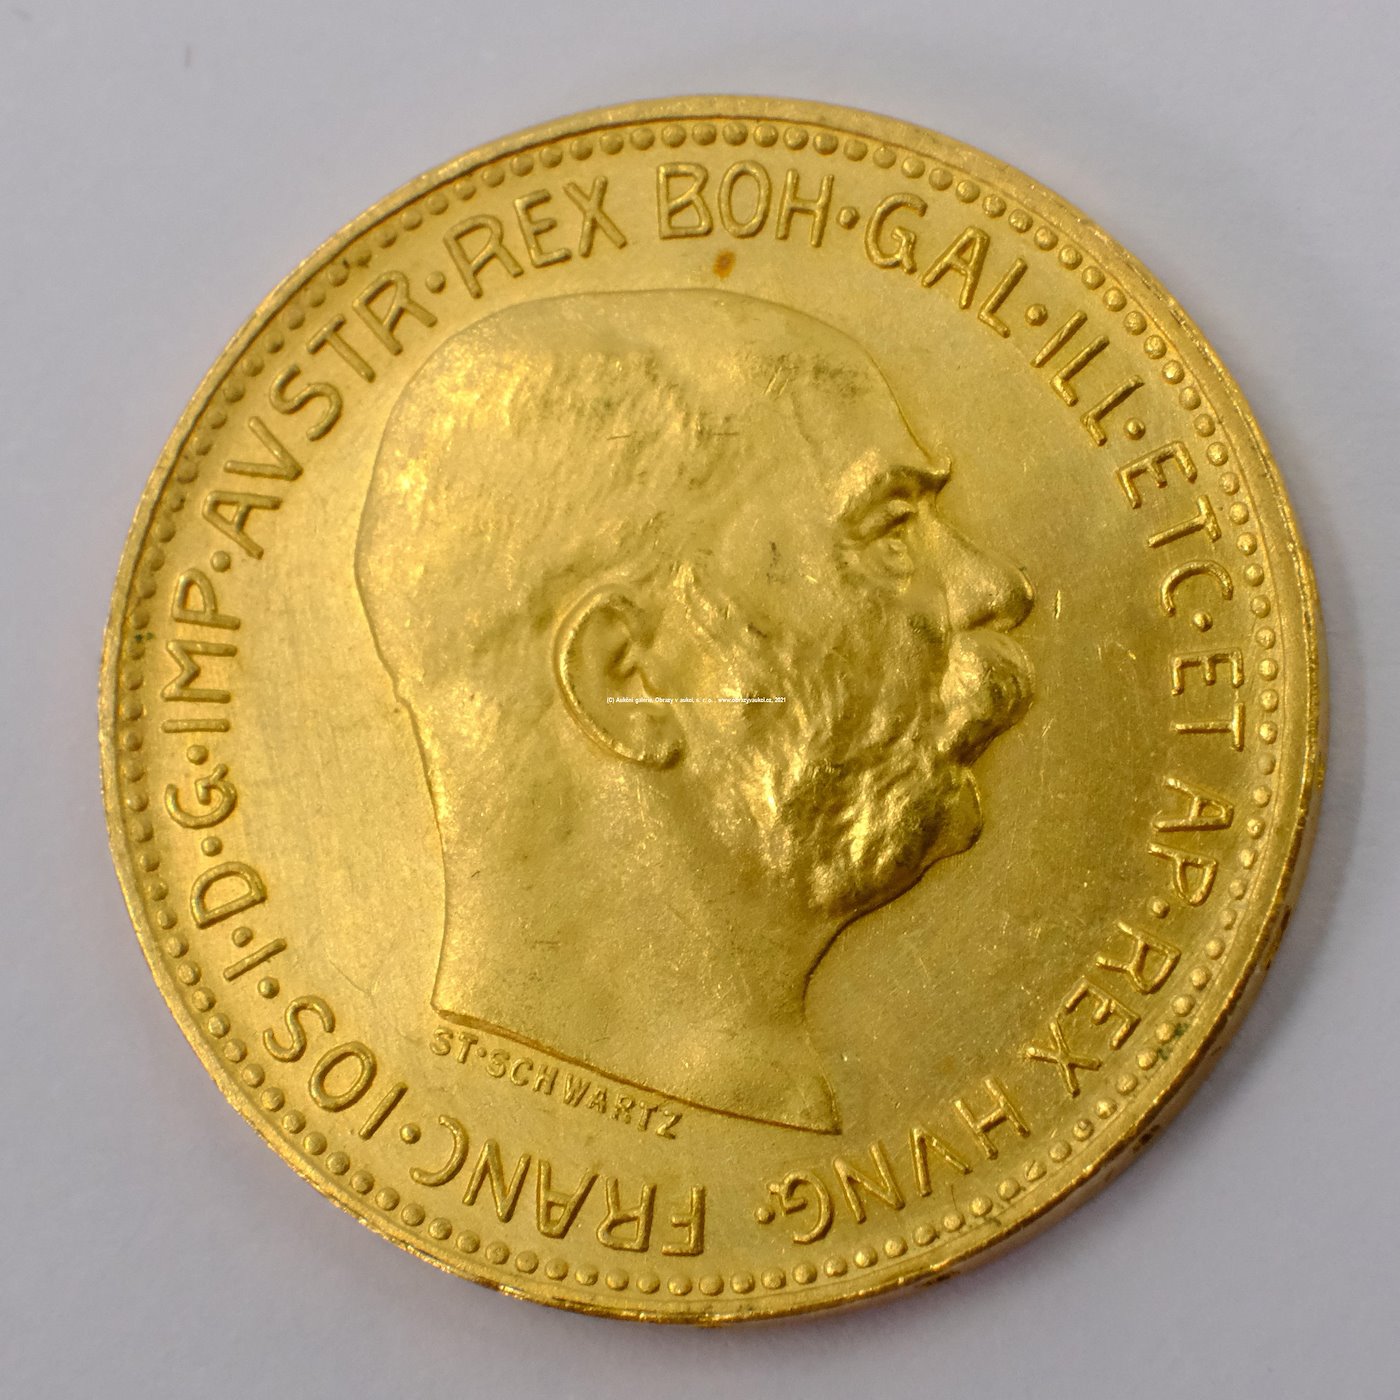 .. - Rakousko Uhersko zlatá 20 Koruna 1915 rakouská. Zlato 900/1000, hrubá hmotnost mince 6,78 g